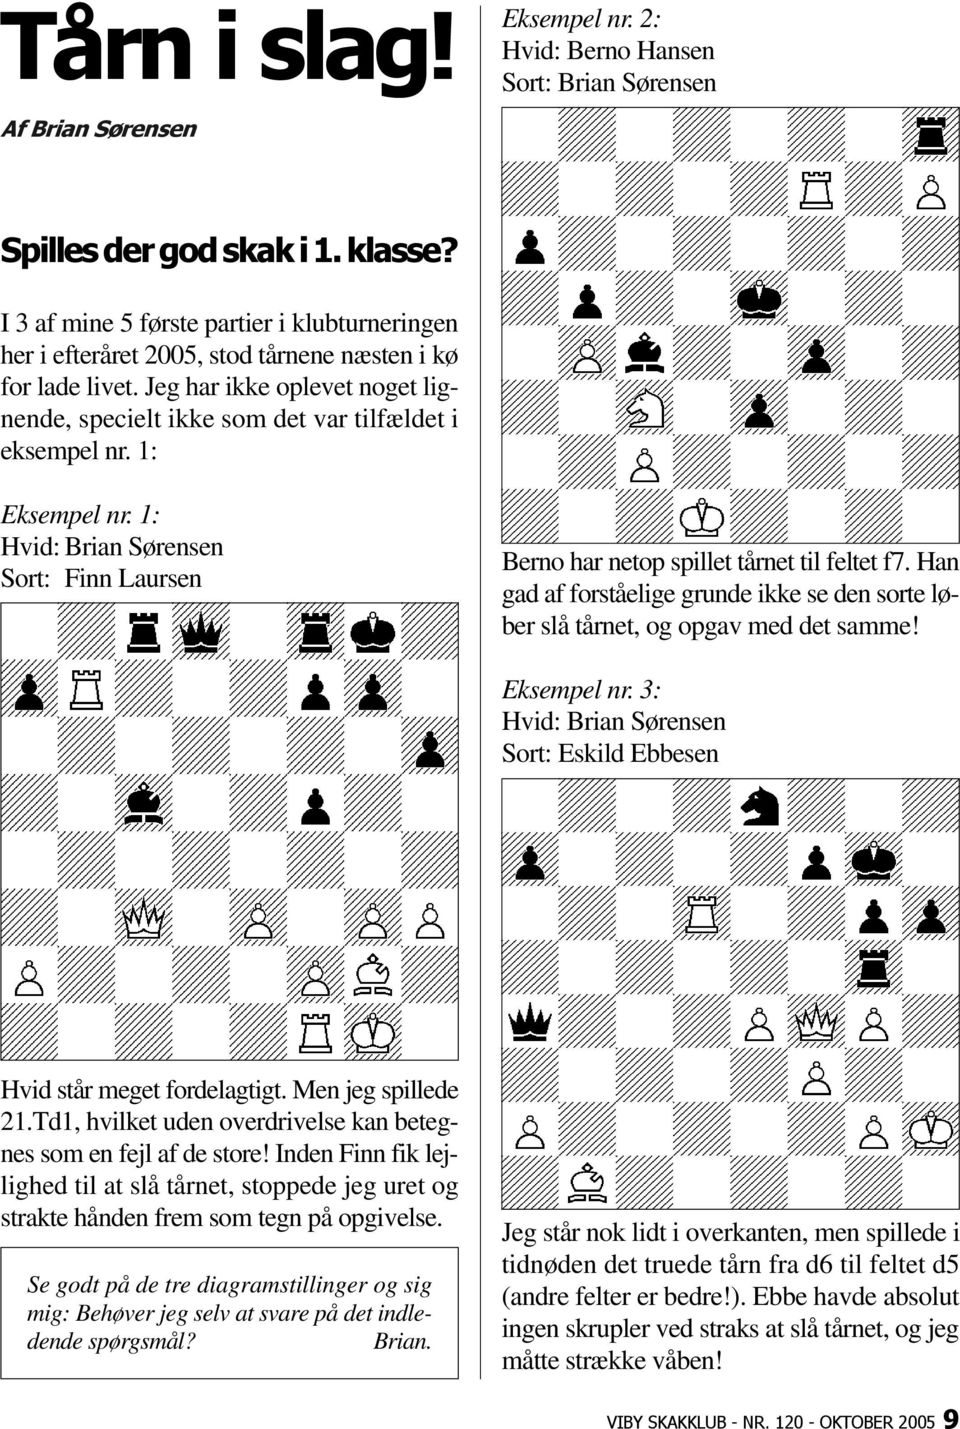 1: Eksempel nr. 1: Hvid: Brian Sørensen Sort: Finn Laursen Berno har netop spillet tårnet til feltet f7. Han gad af forståelige grunde ikke se den sorte løber slå tårnet, og opgav med det samme!